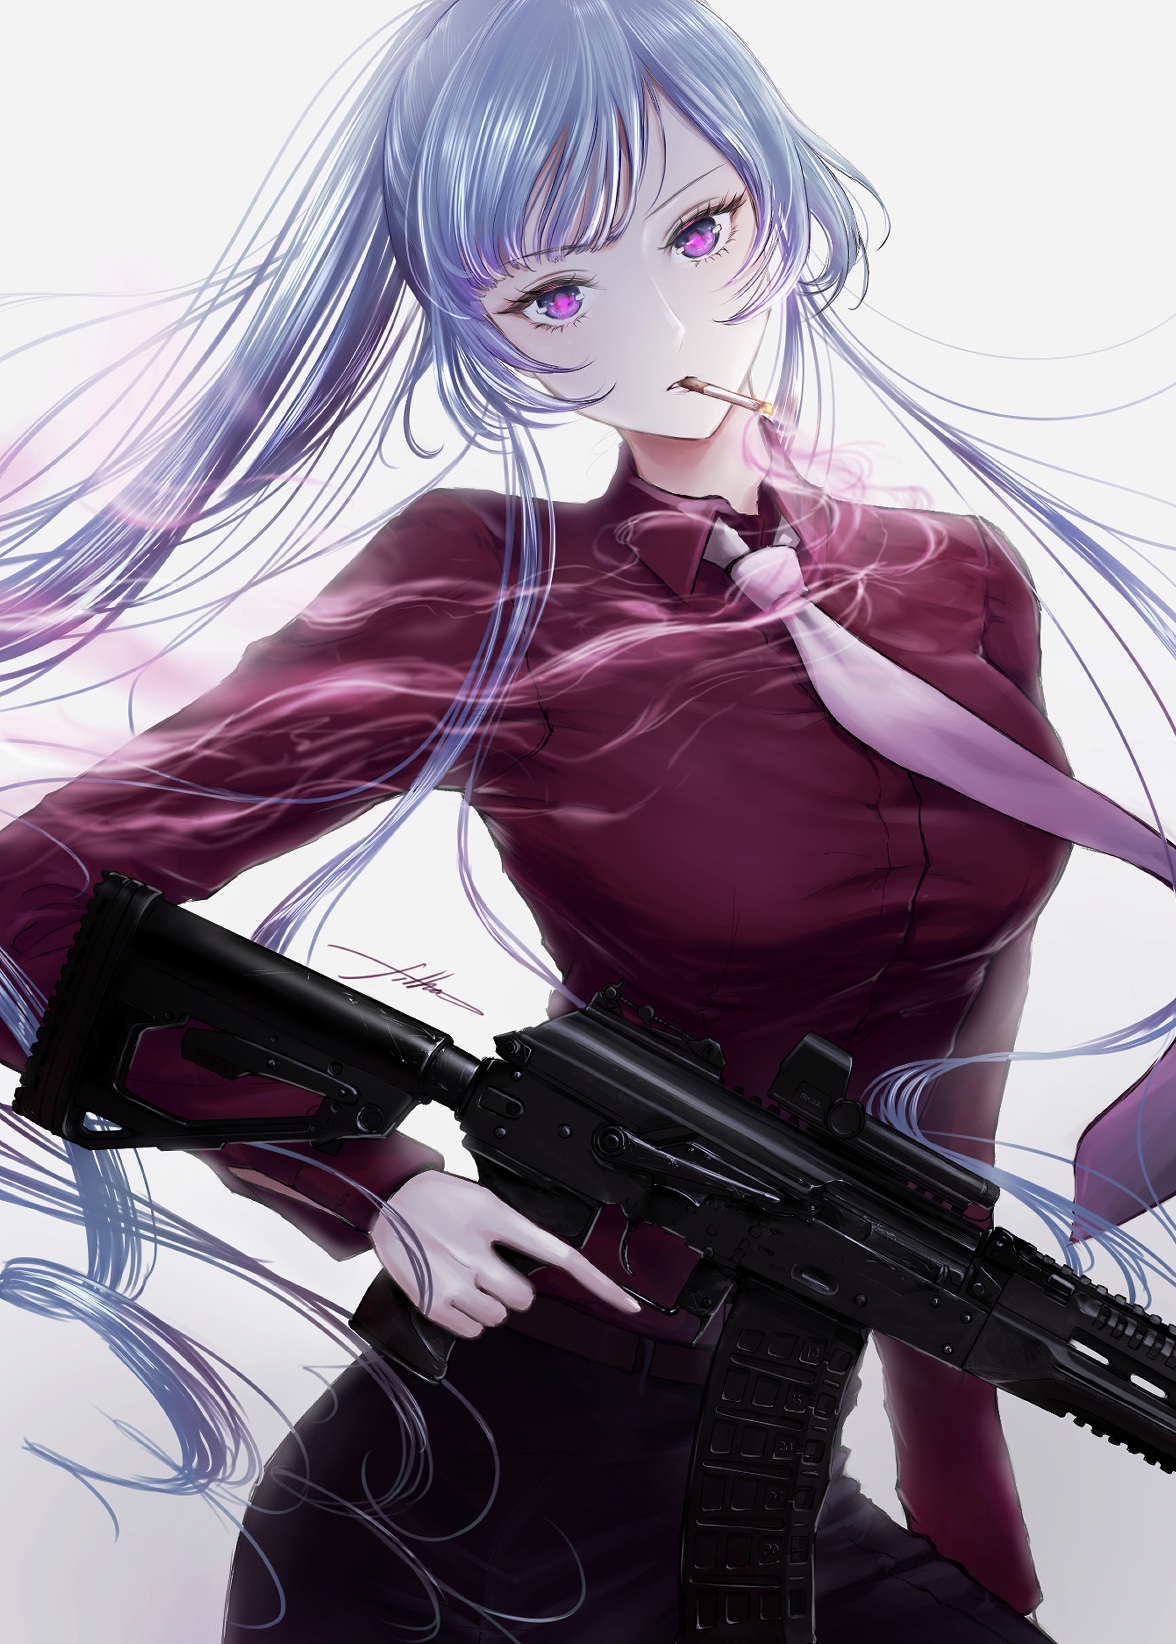 Anime 1176x1644 AK-12 (Girls Frontline) Girls Frontline long hair silver hair anime anime girls artwork digital art fan art gun girls with guns